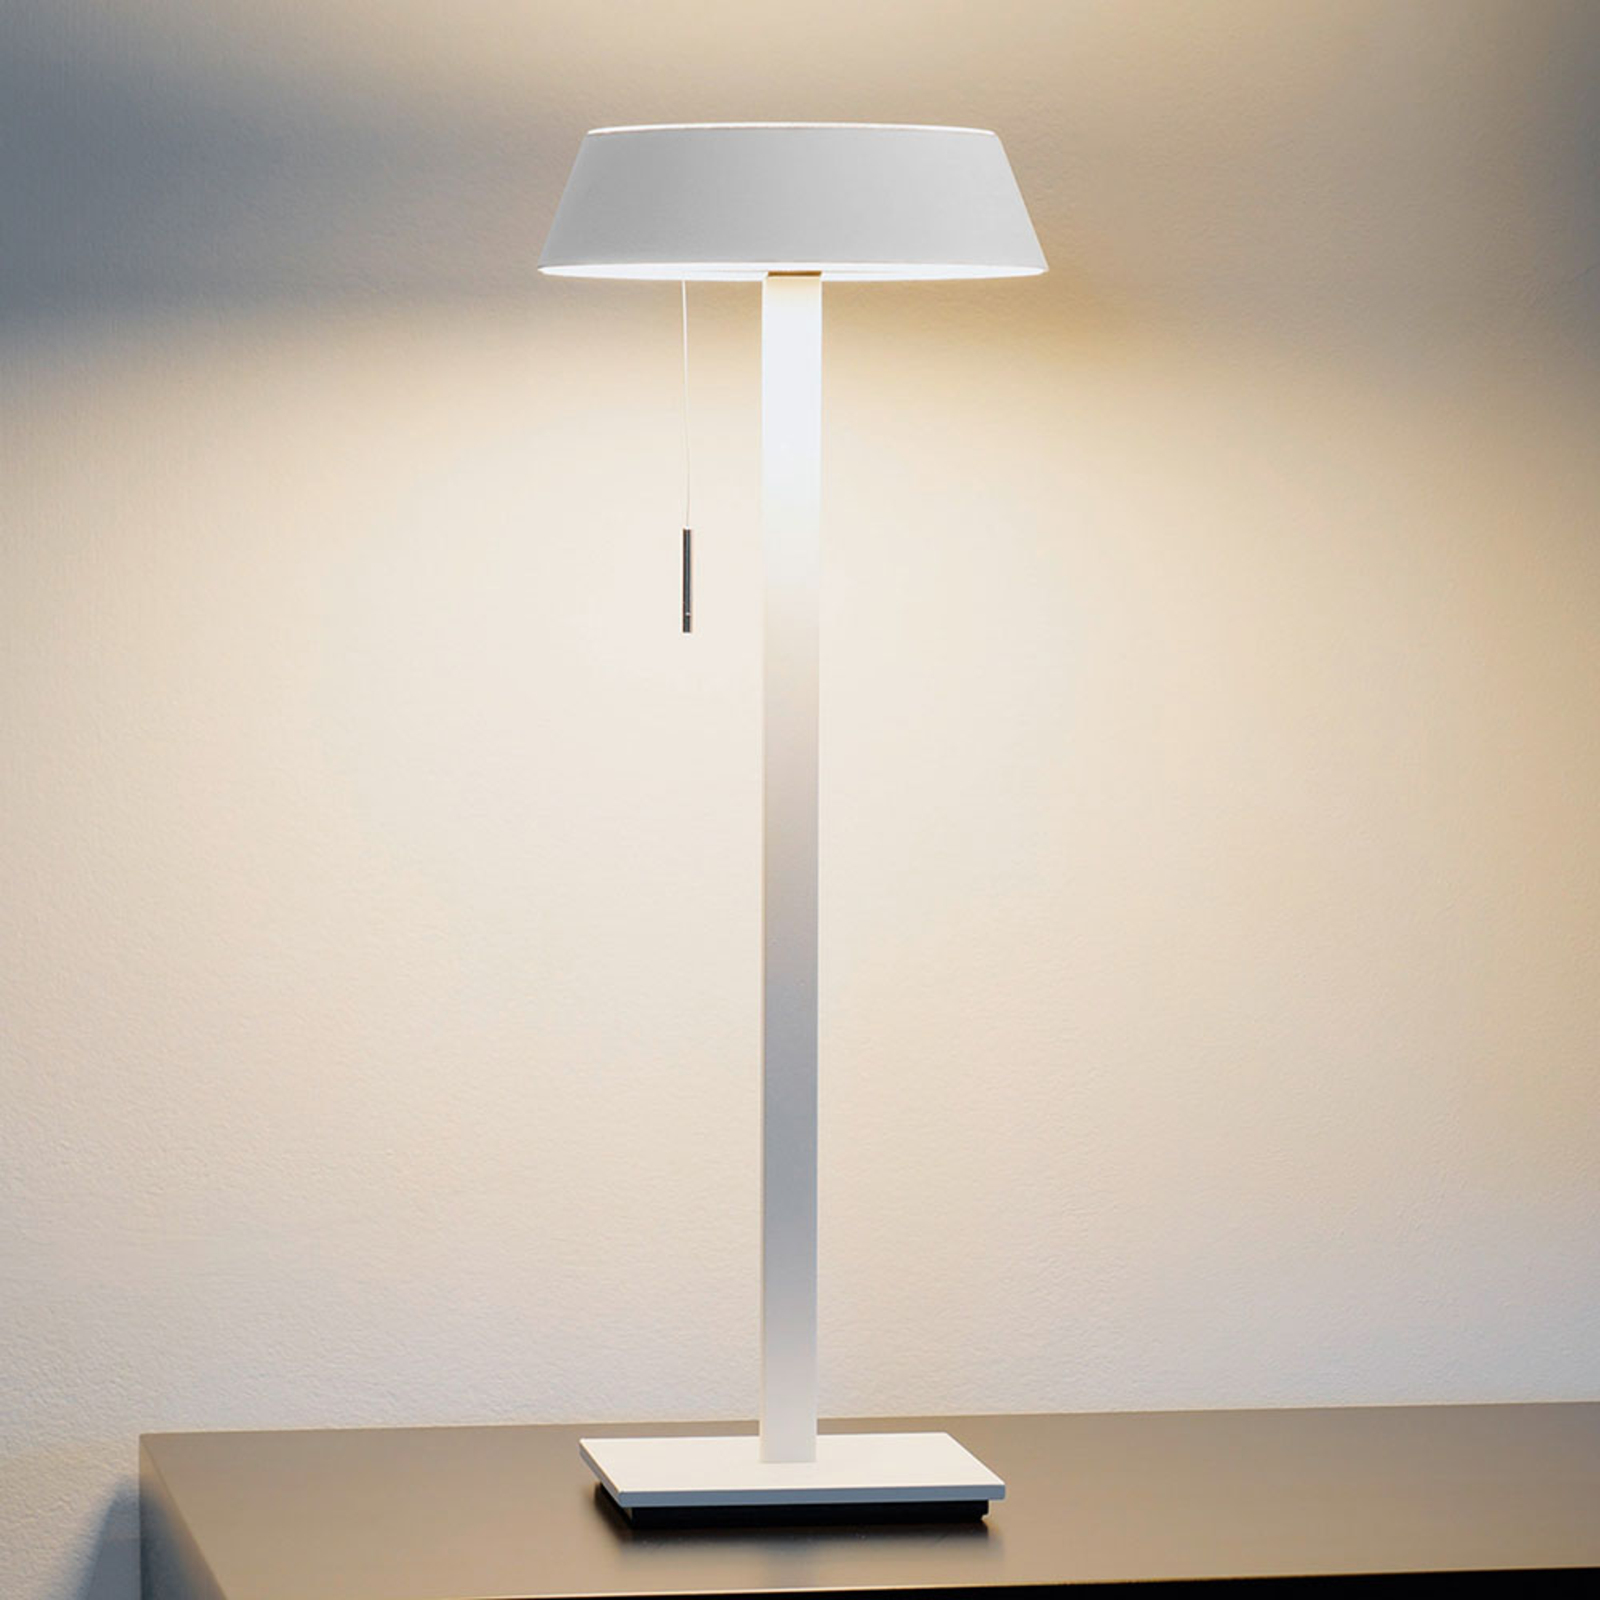 OLIGO Glance LED asztali lámpa fehér matt